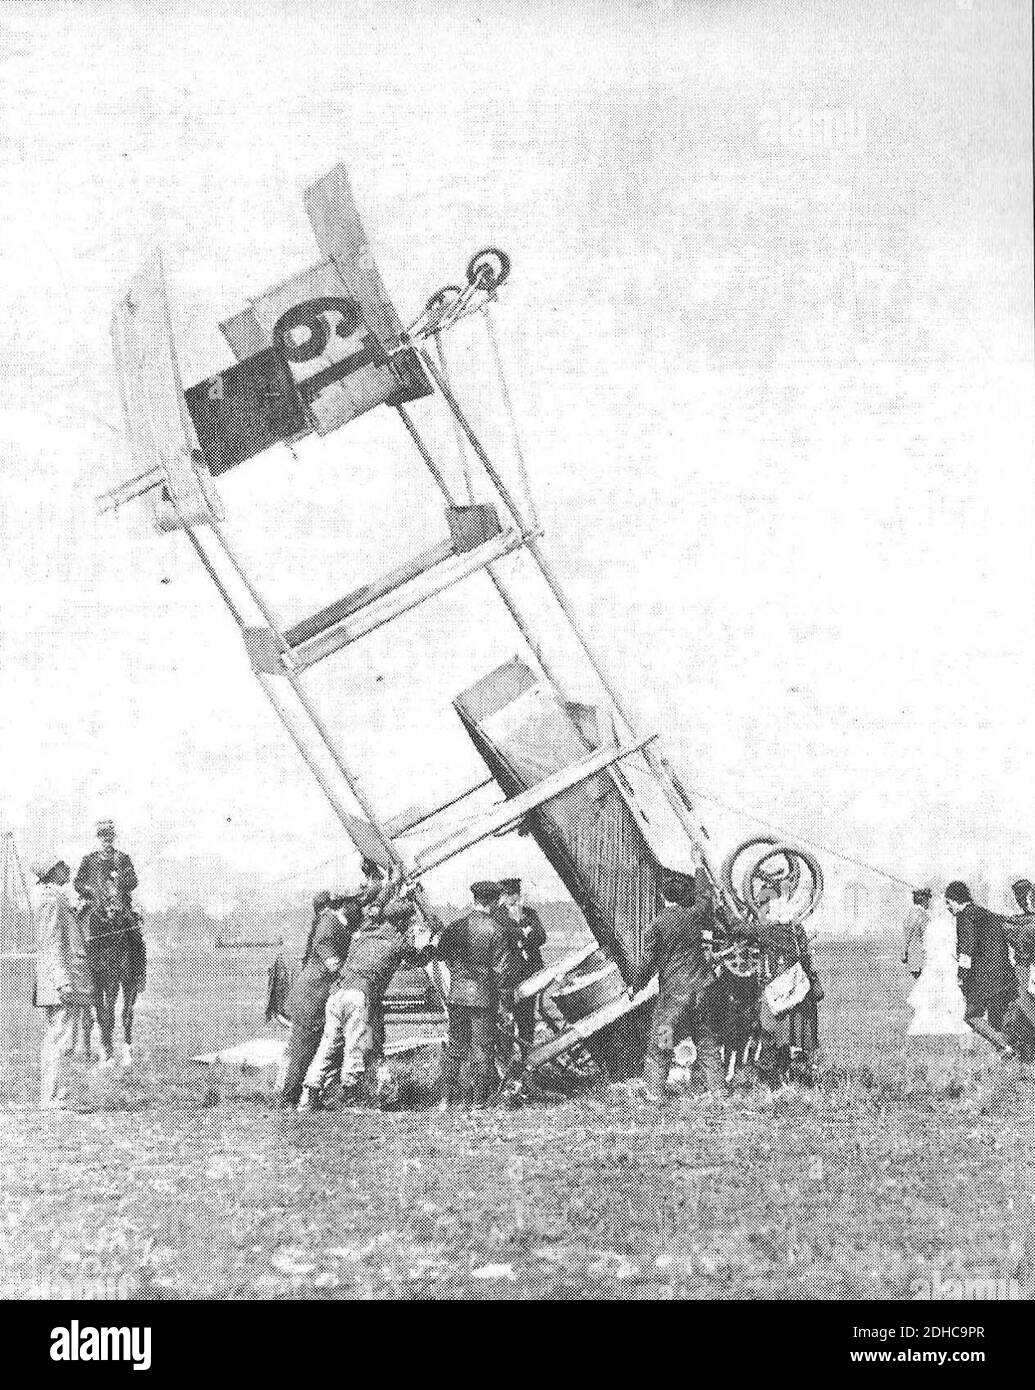 La revue aérienne accident du Breguet 19. Stock Photo